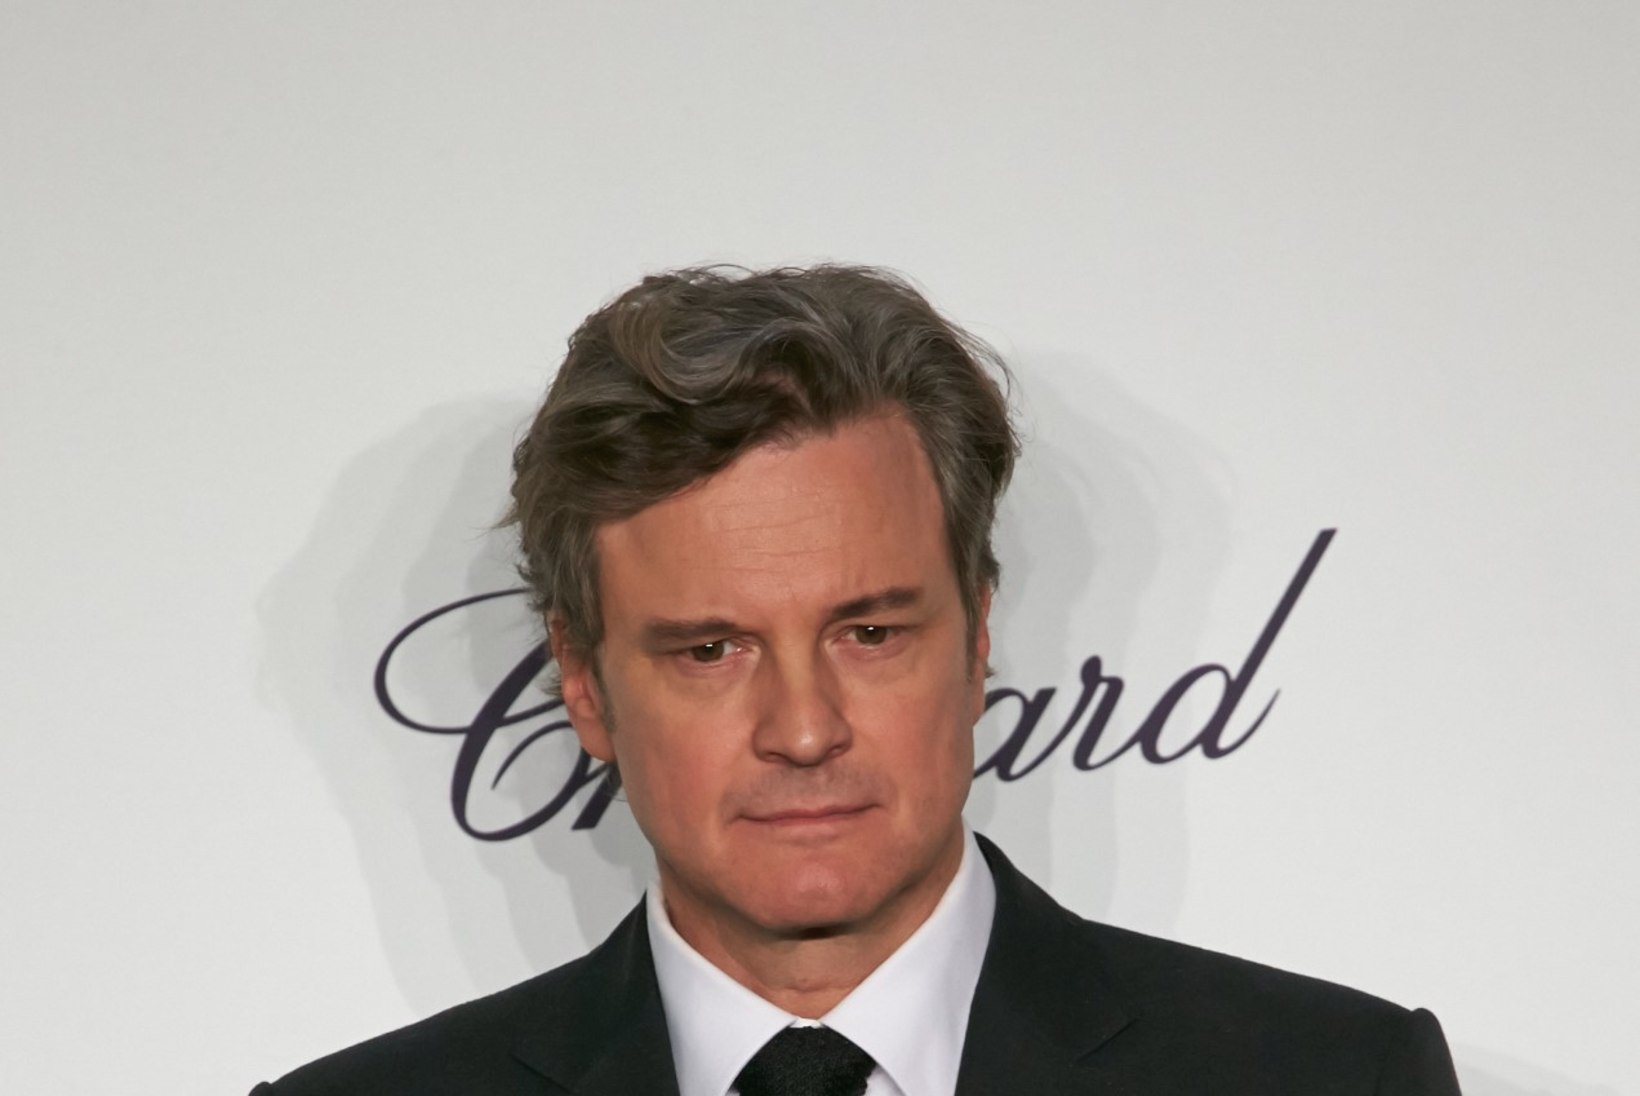 Kas Colin Firth on kaotanud juba liiga palju oma kehakaalust?